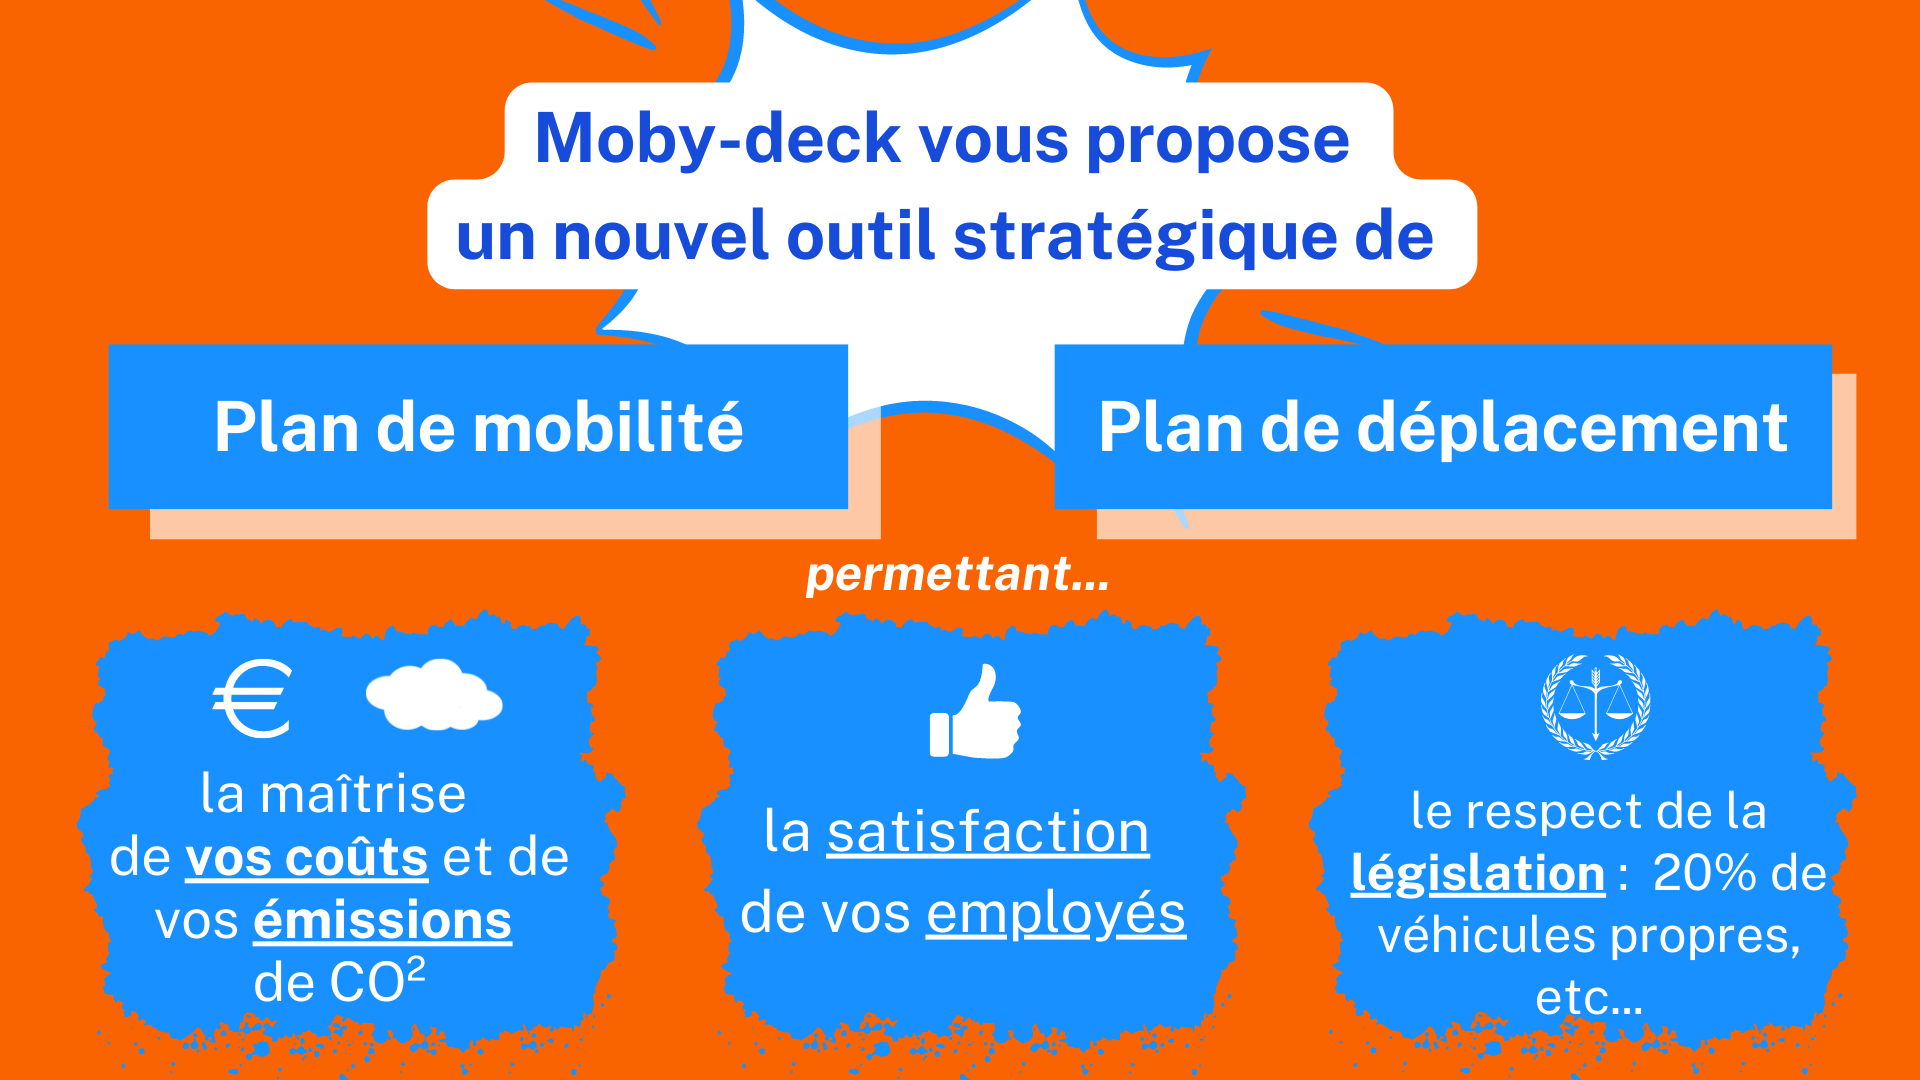 Moby-deck vous propose un plan de mobilité et de déplacement